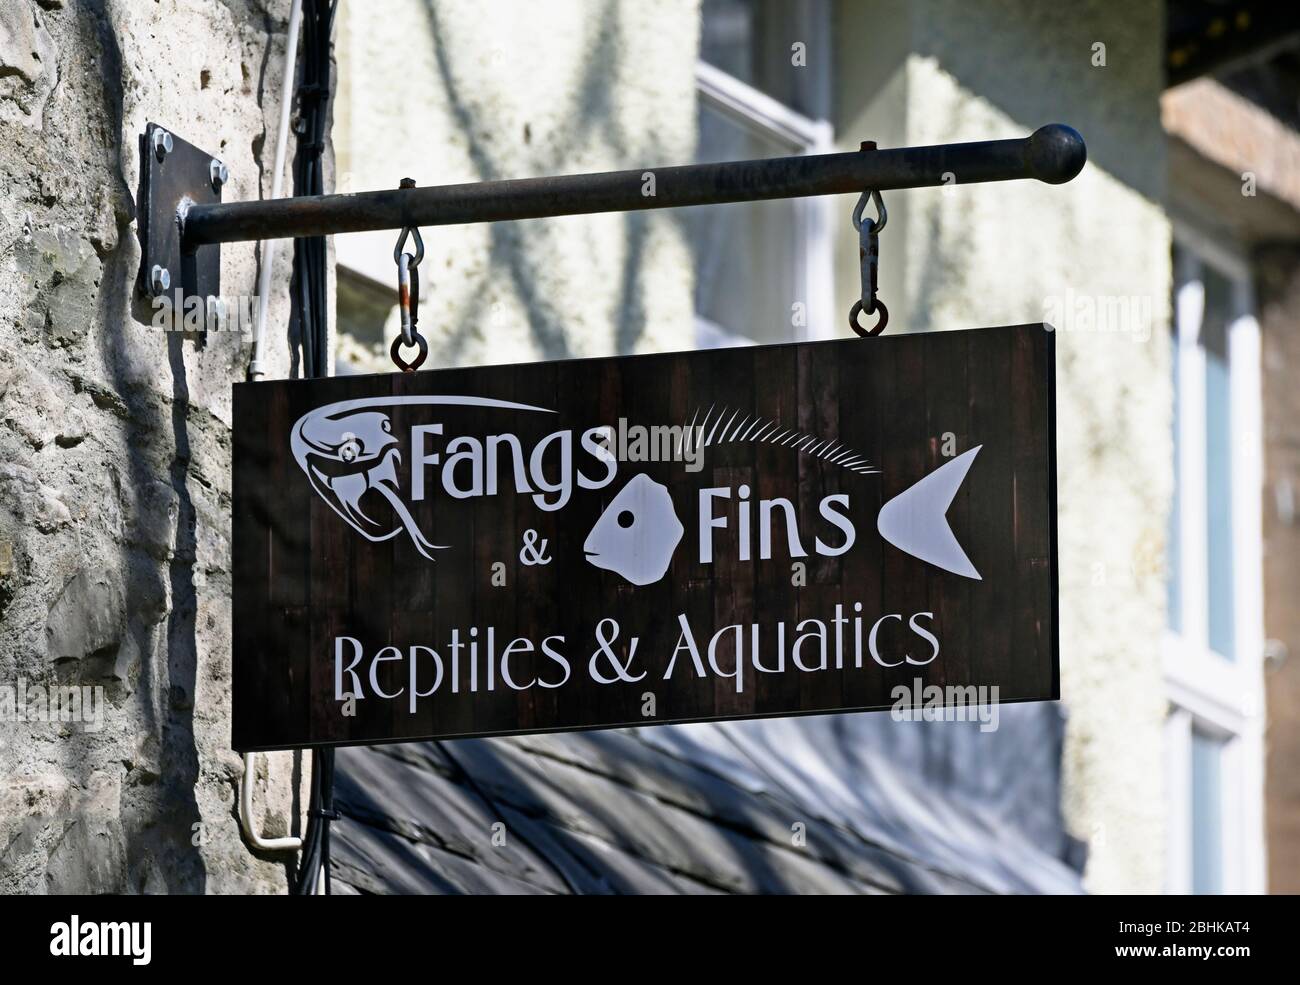 Señal de la tienda. Fangs & Fins, Reptiles & Aquatics. Blackhall Shopping Yard, Kendal, Cumbria, Inglaterra, Reino Unido, Europa. Foto de stock